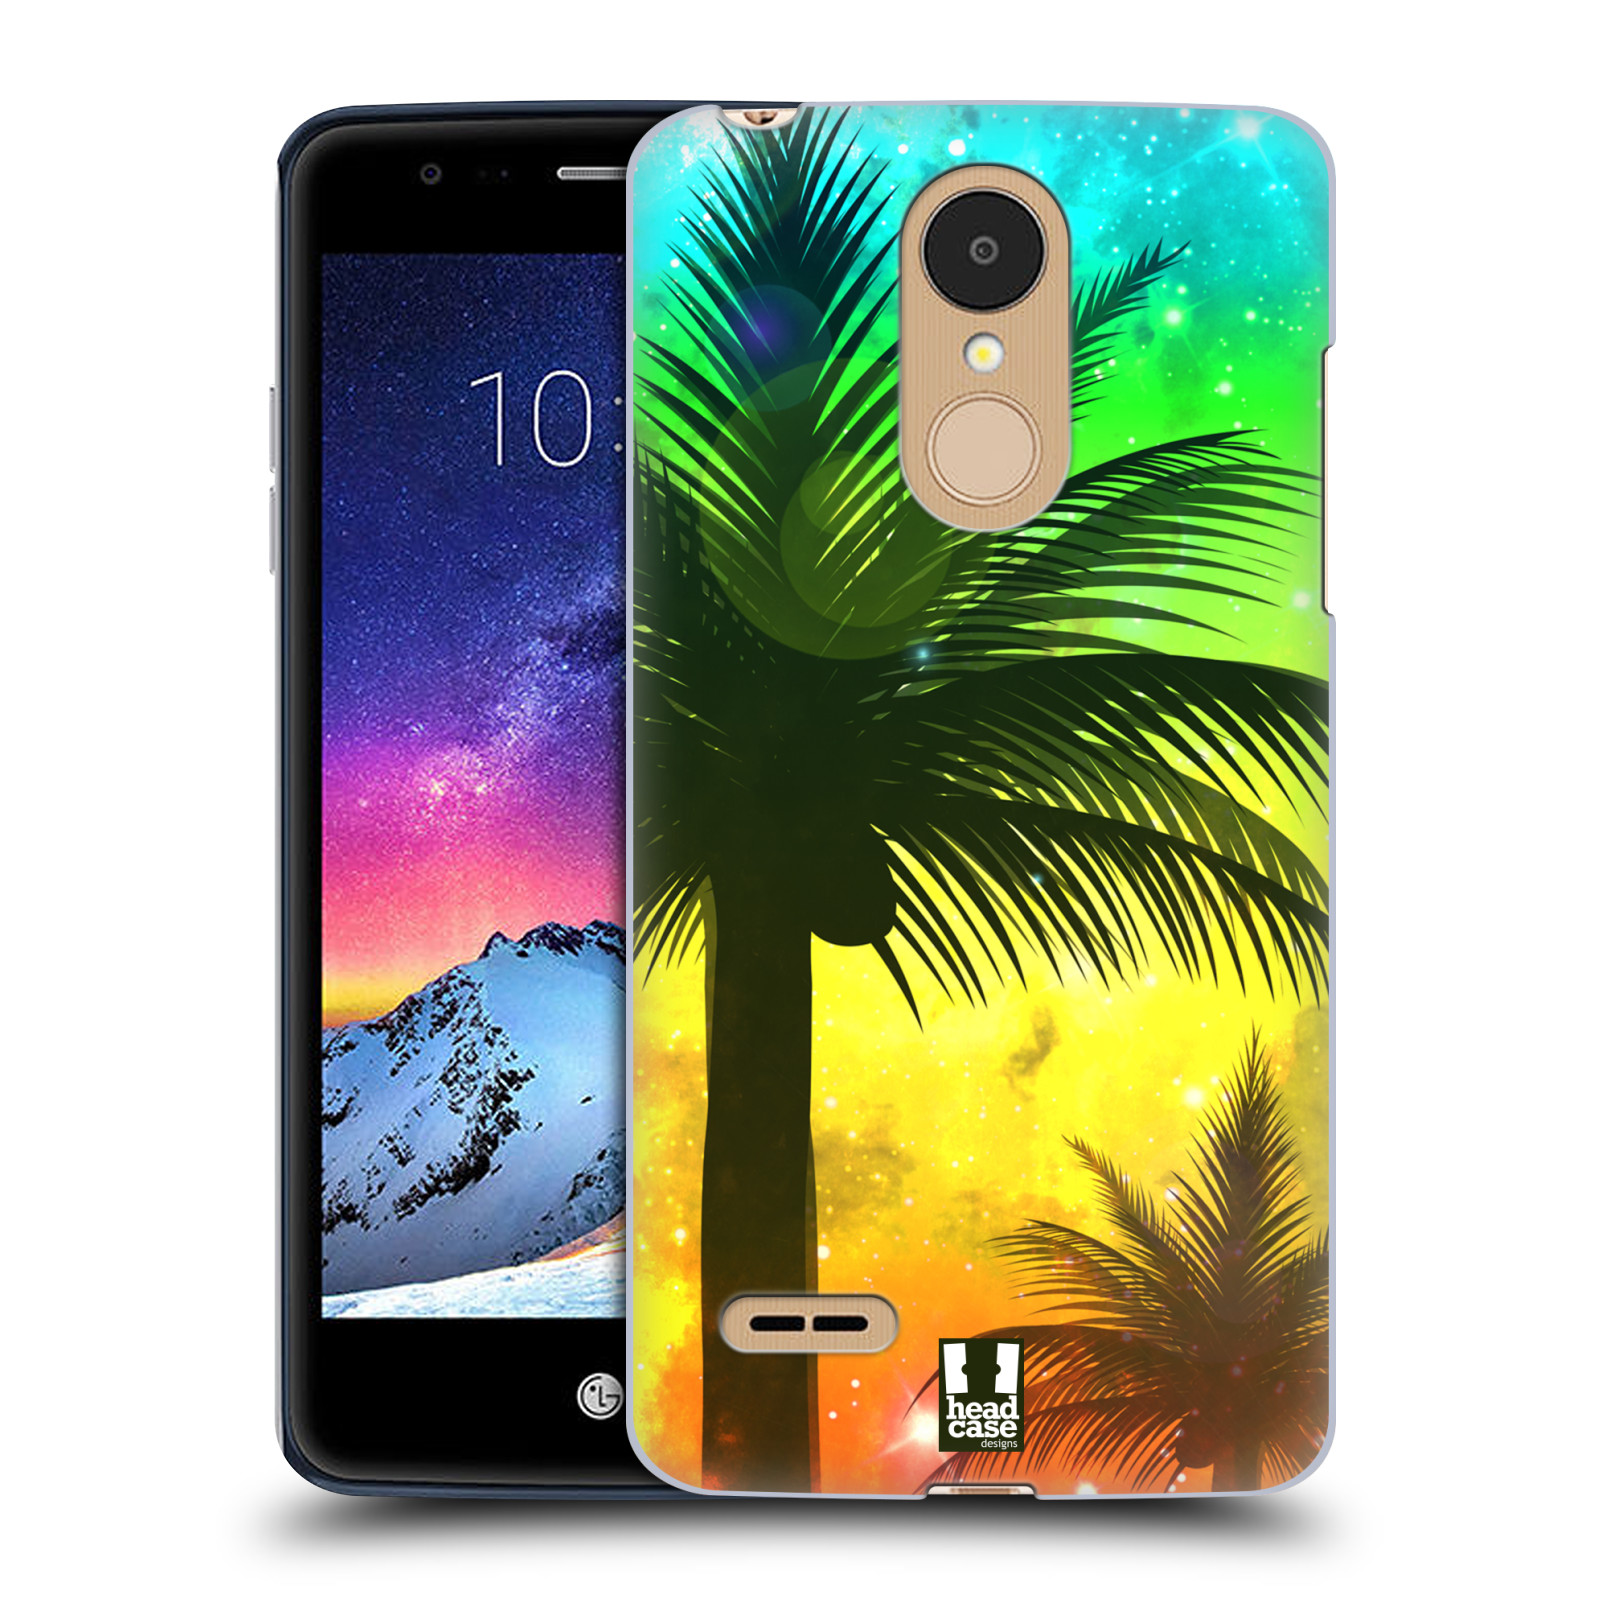 HEAD CASE plastový obal na mobil LG K9 / K8 2018 vzor Kreslený motiv silueta moře a palmy ZELENÁ A ORANŽOVÁ